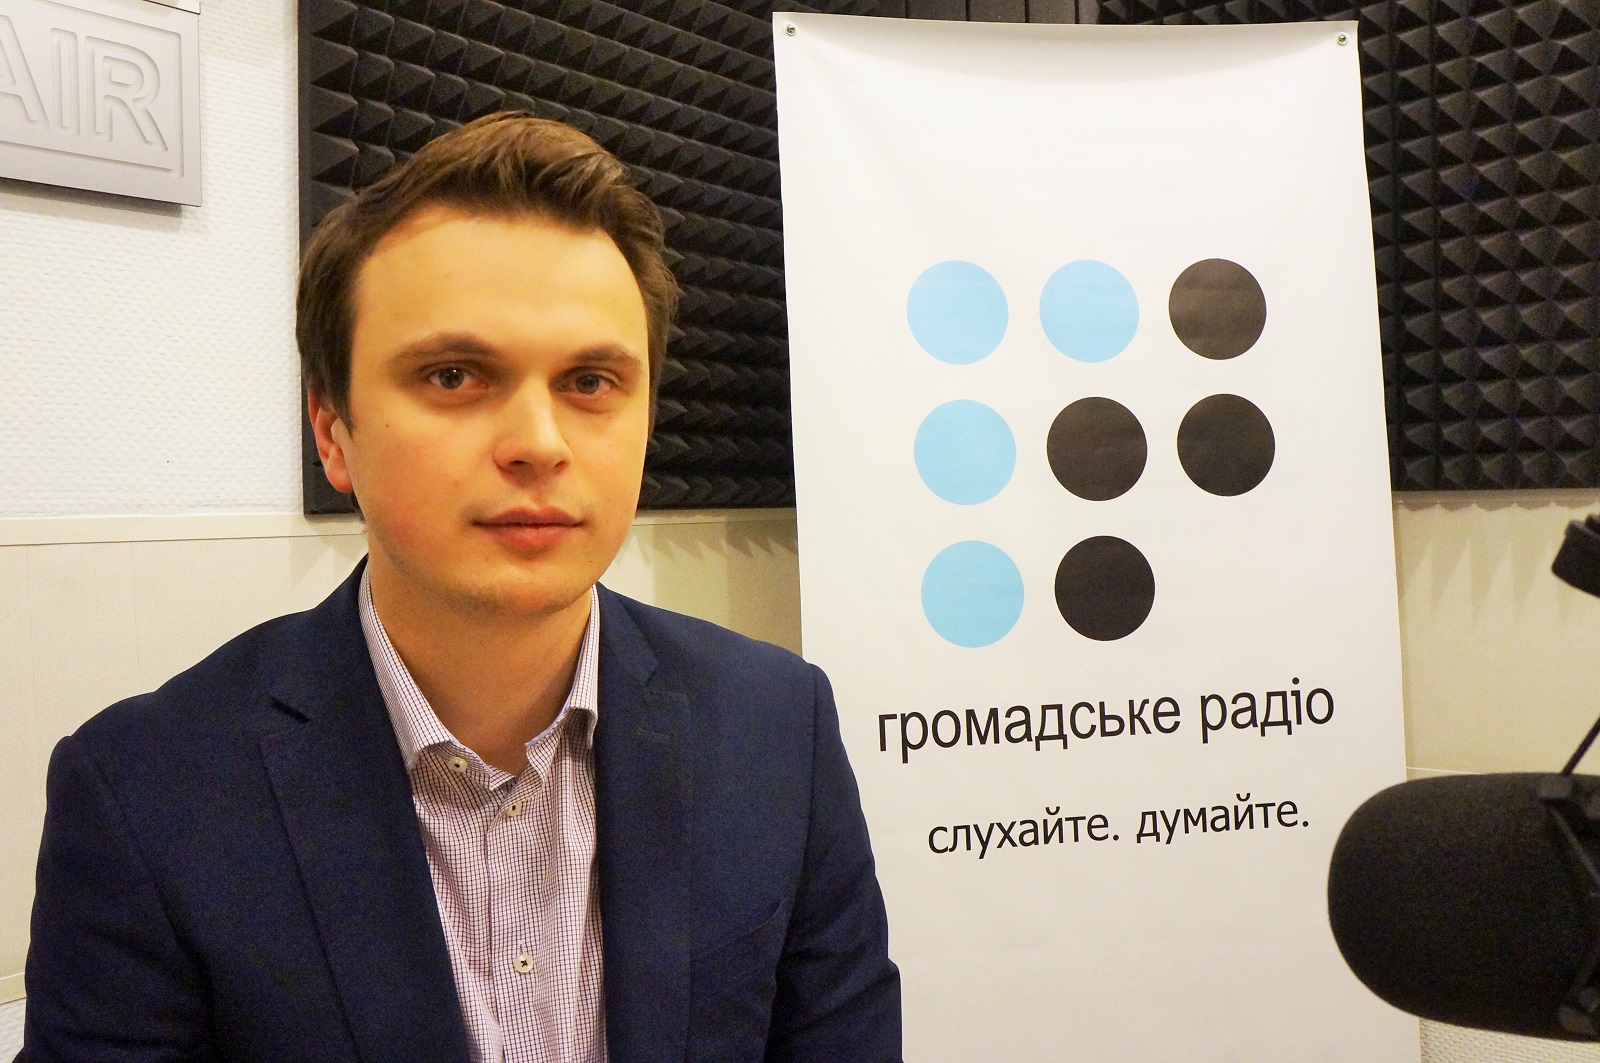 Следующий премьер вряд ли будет технократом, — политолог Николай Давидюк